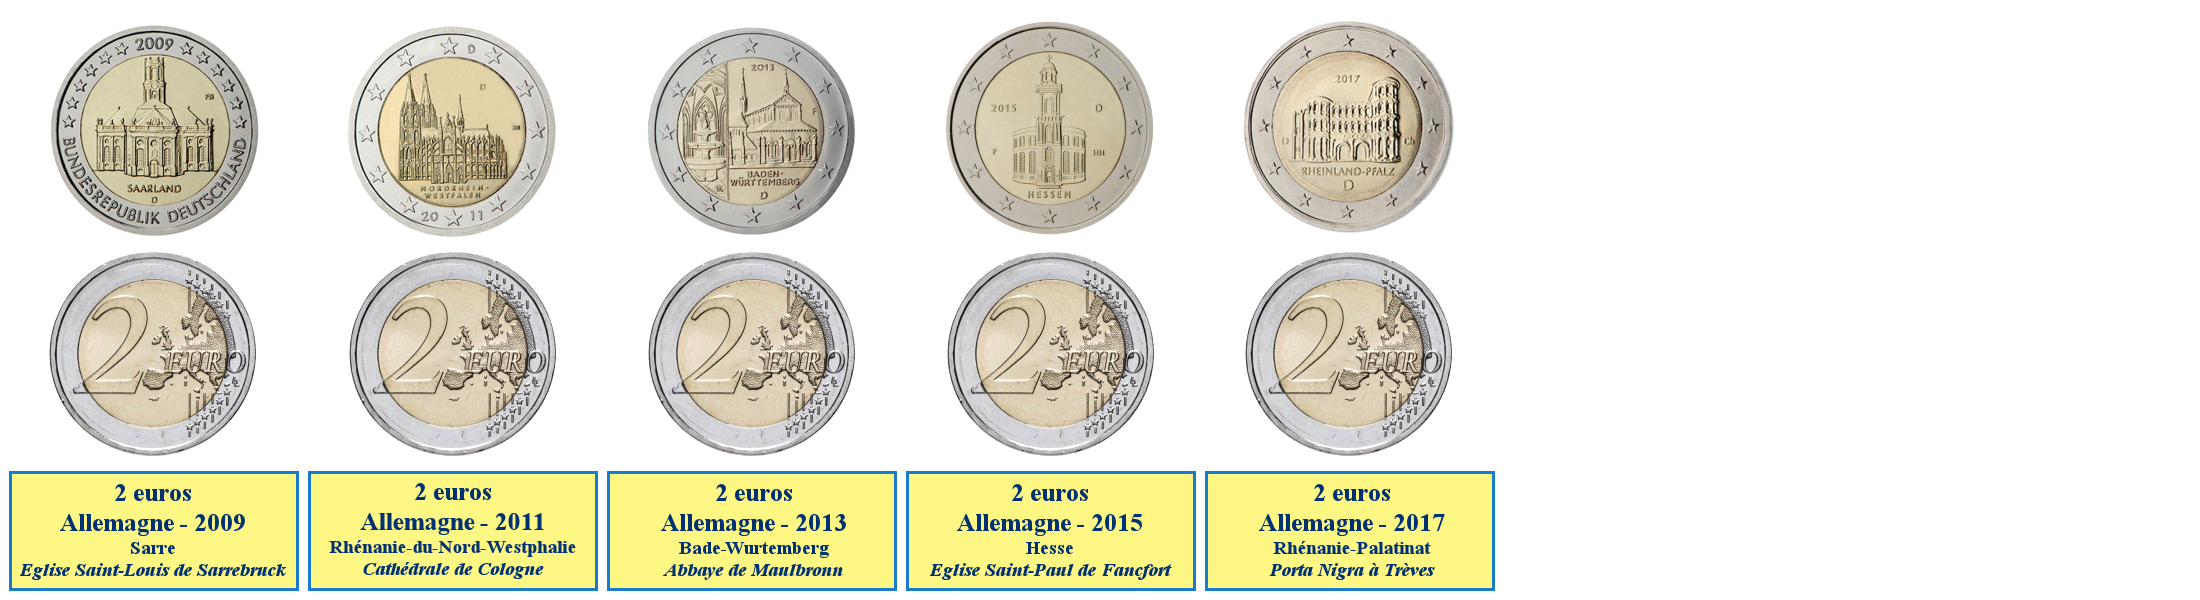 Photos de pièces de monnaies de 2 euros commémoratives des Länder du sud-ouest de l'Allemagne